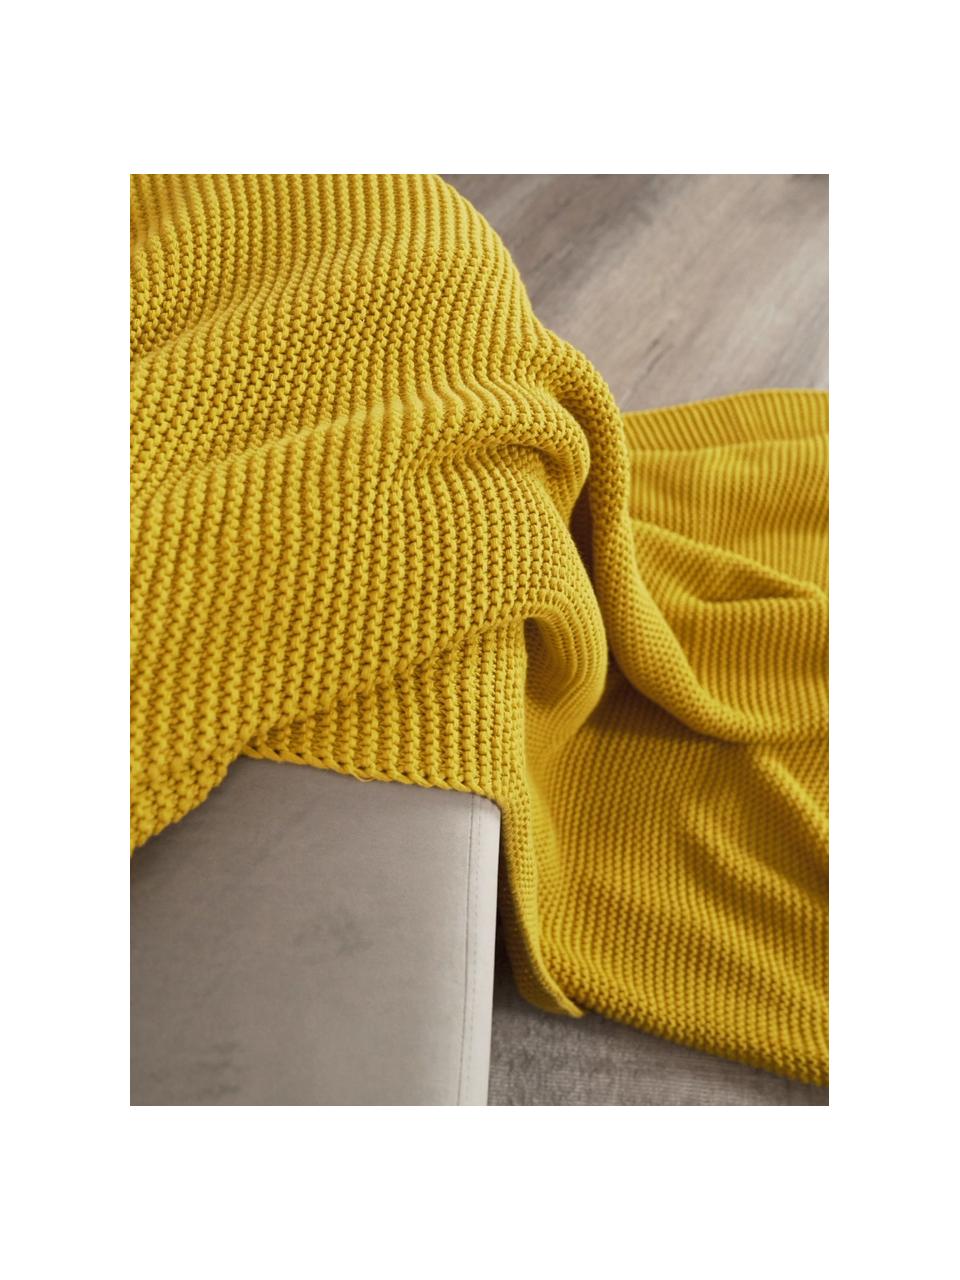 Coperta a maglia in cotone organico Adalyn, 100% cotone organico, certificato GOTS, Giallo senape, Larg. 150 x Lung. 200 cm